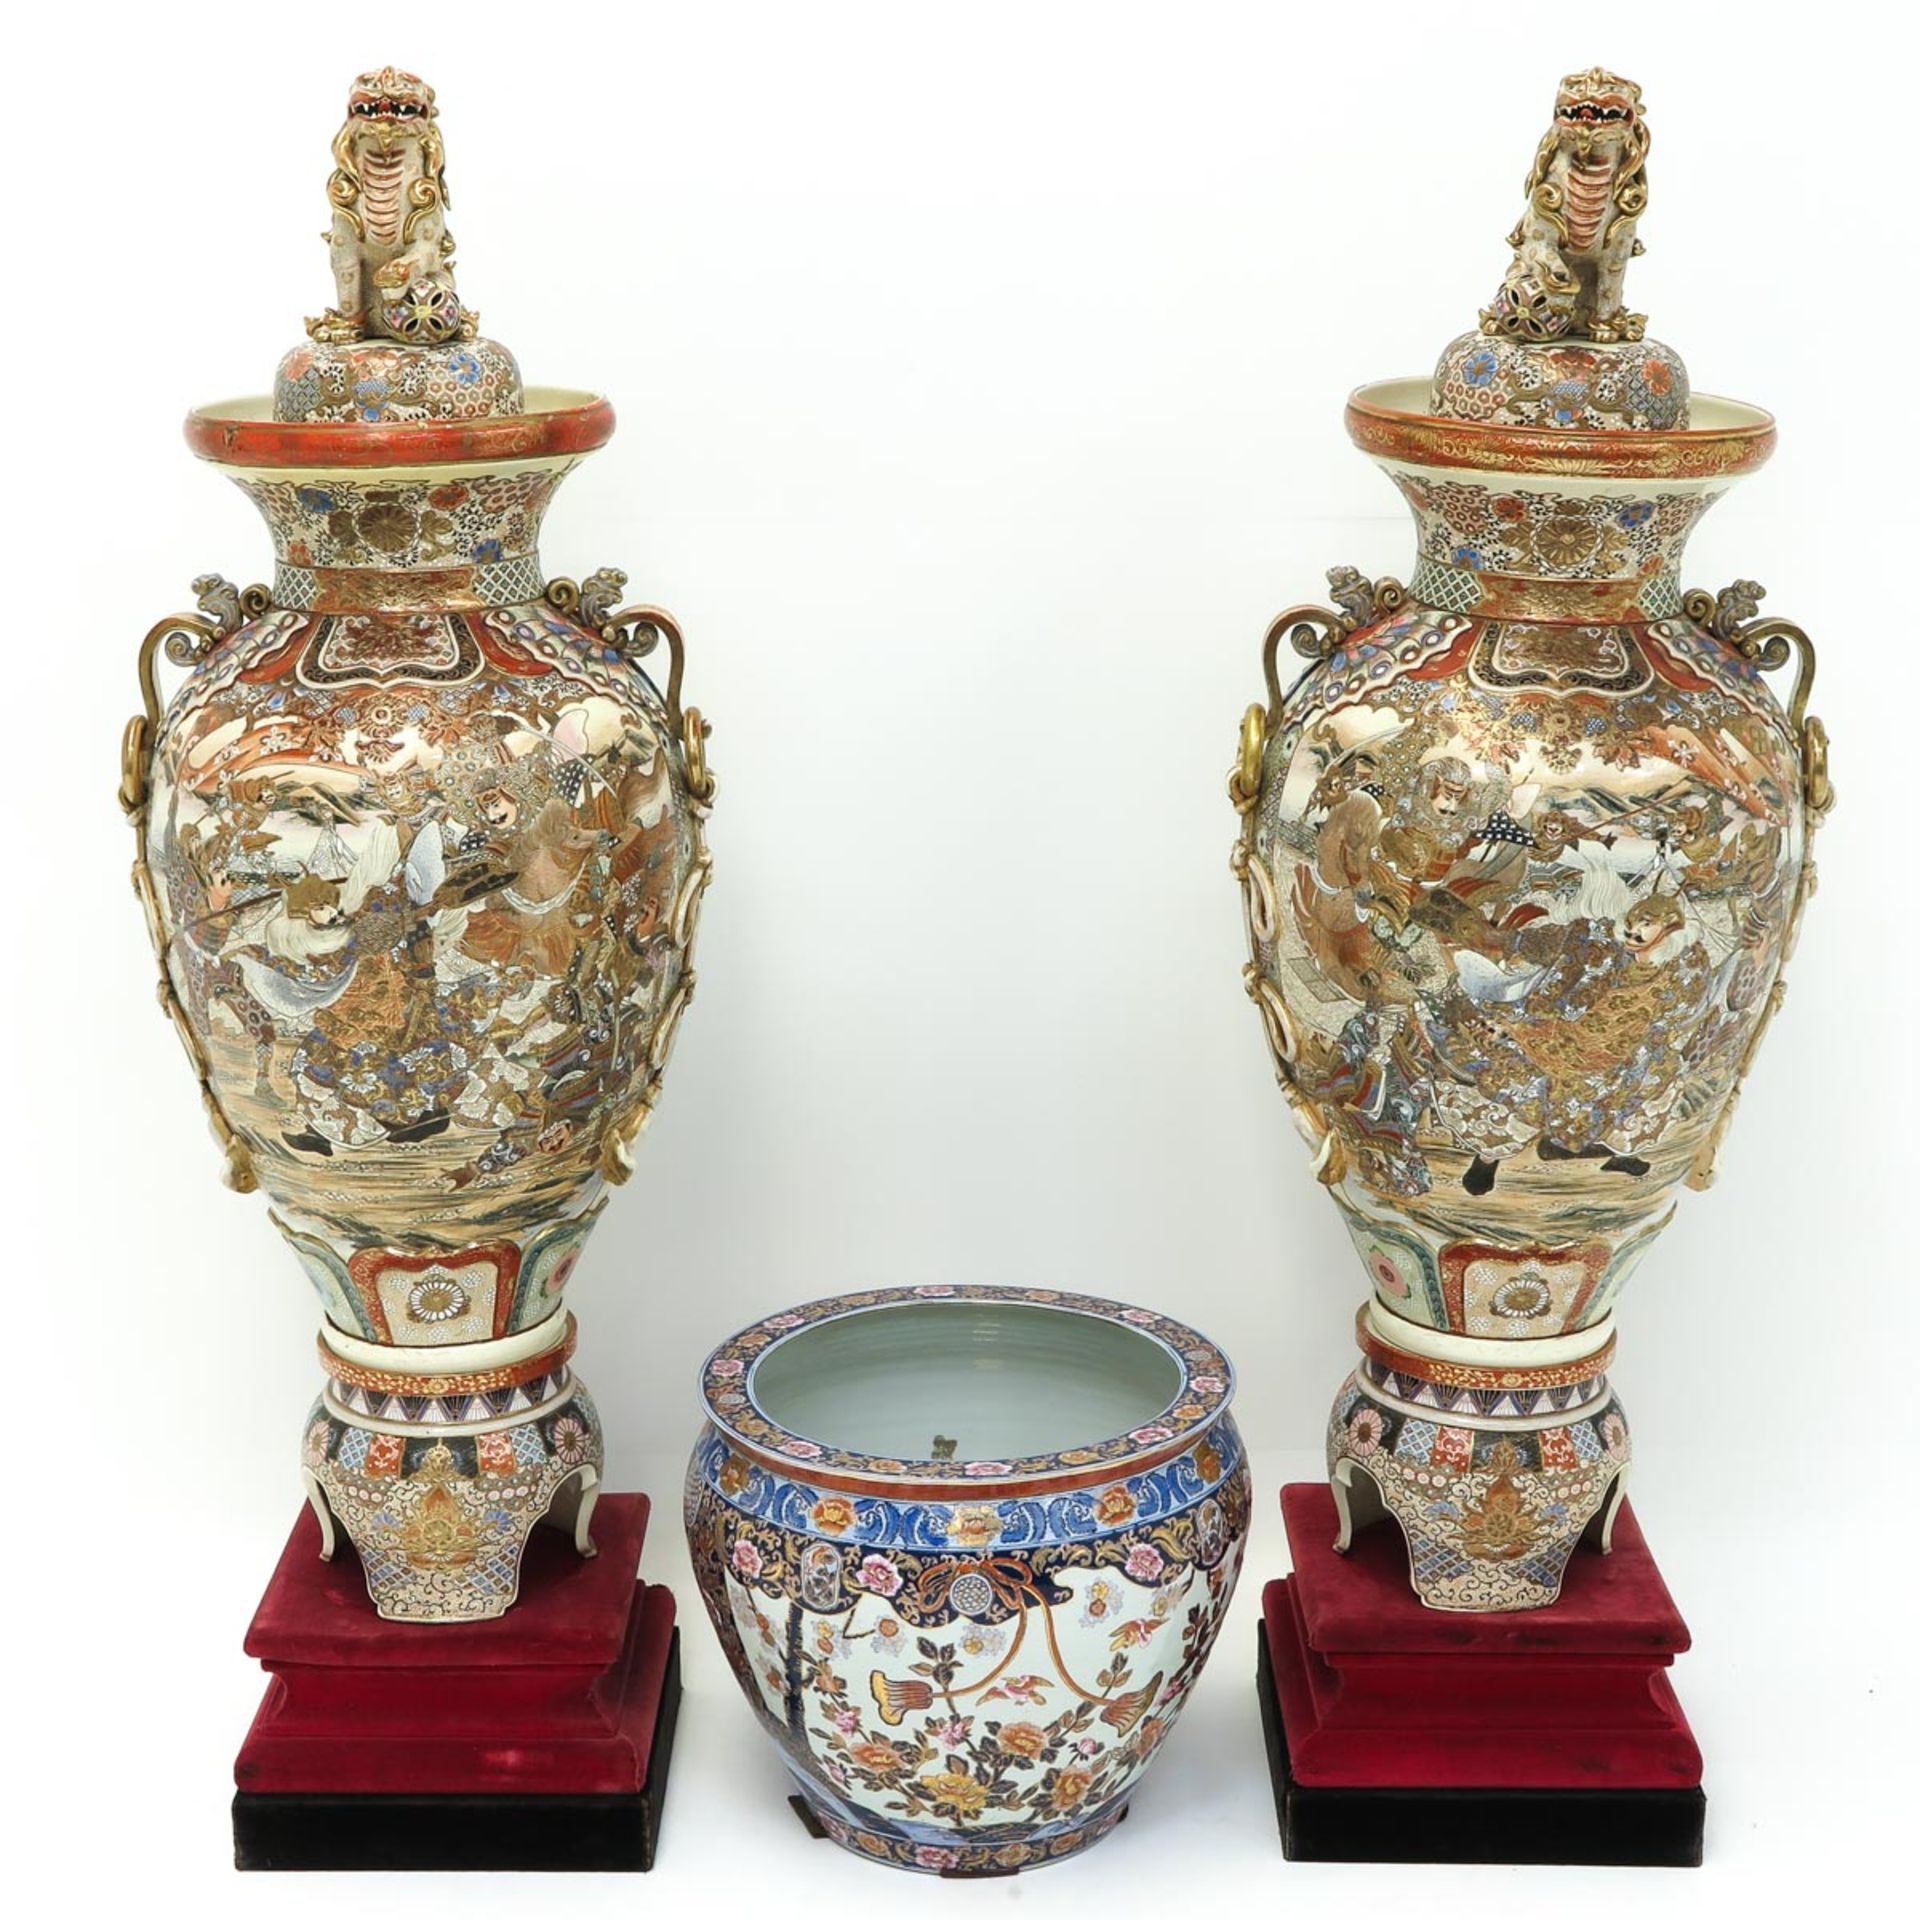 A Collection of Satsuma Porcelain